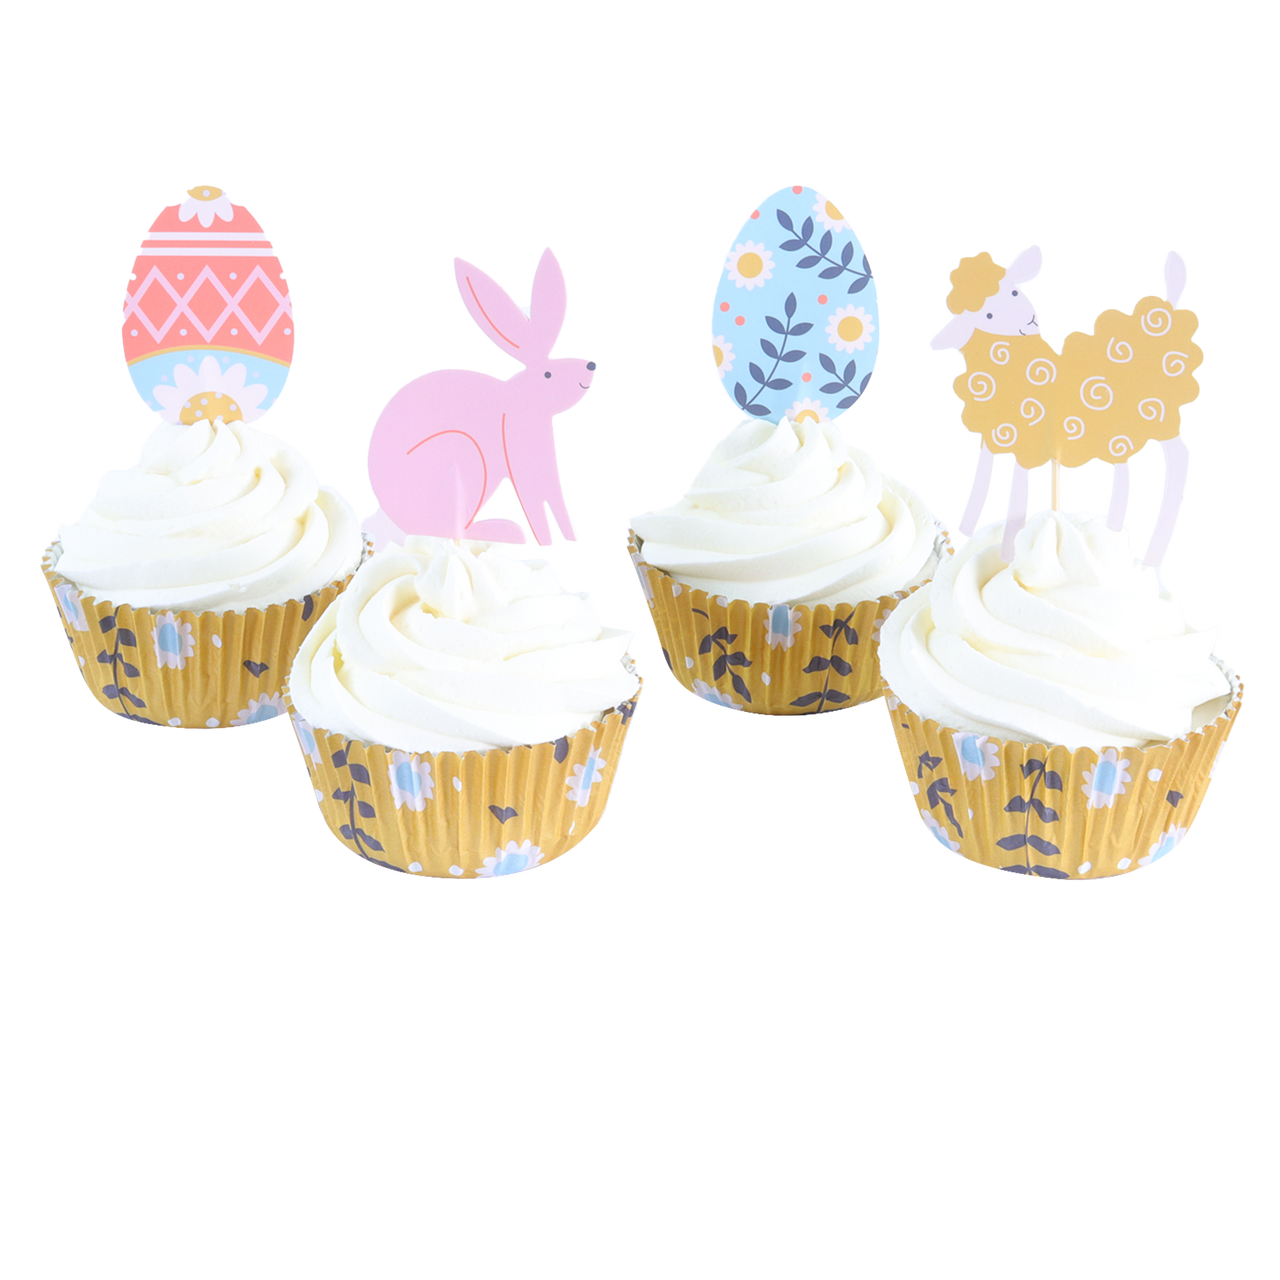 Conjunto Cupcake Feliz Páscoa 24un - PME